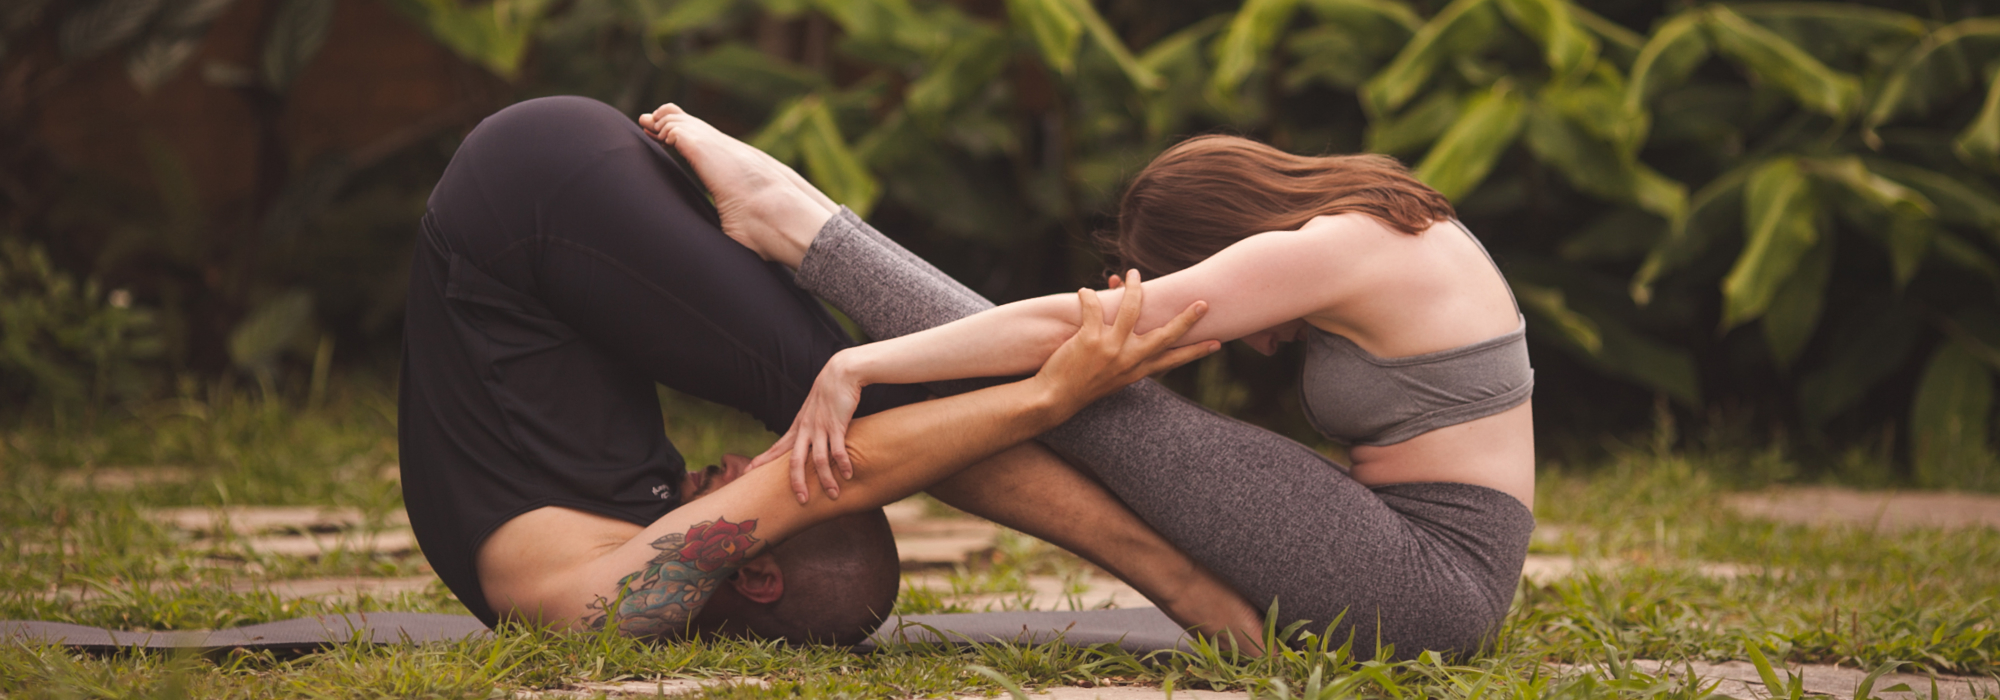 Yoga além das posturas: um caminho de integração e consciência - Floresta  Ativista